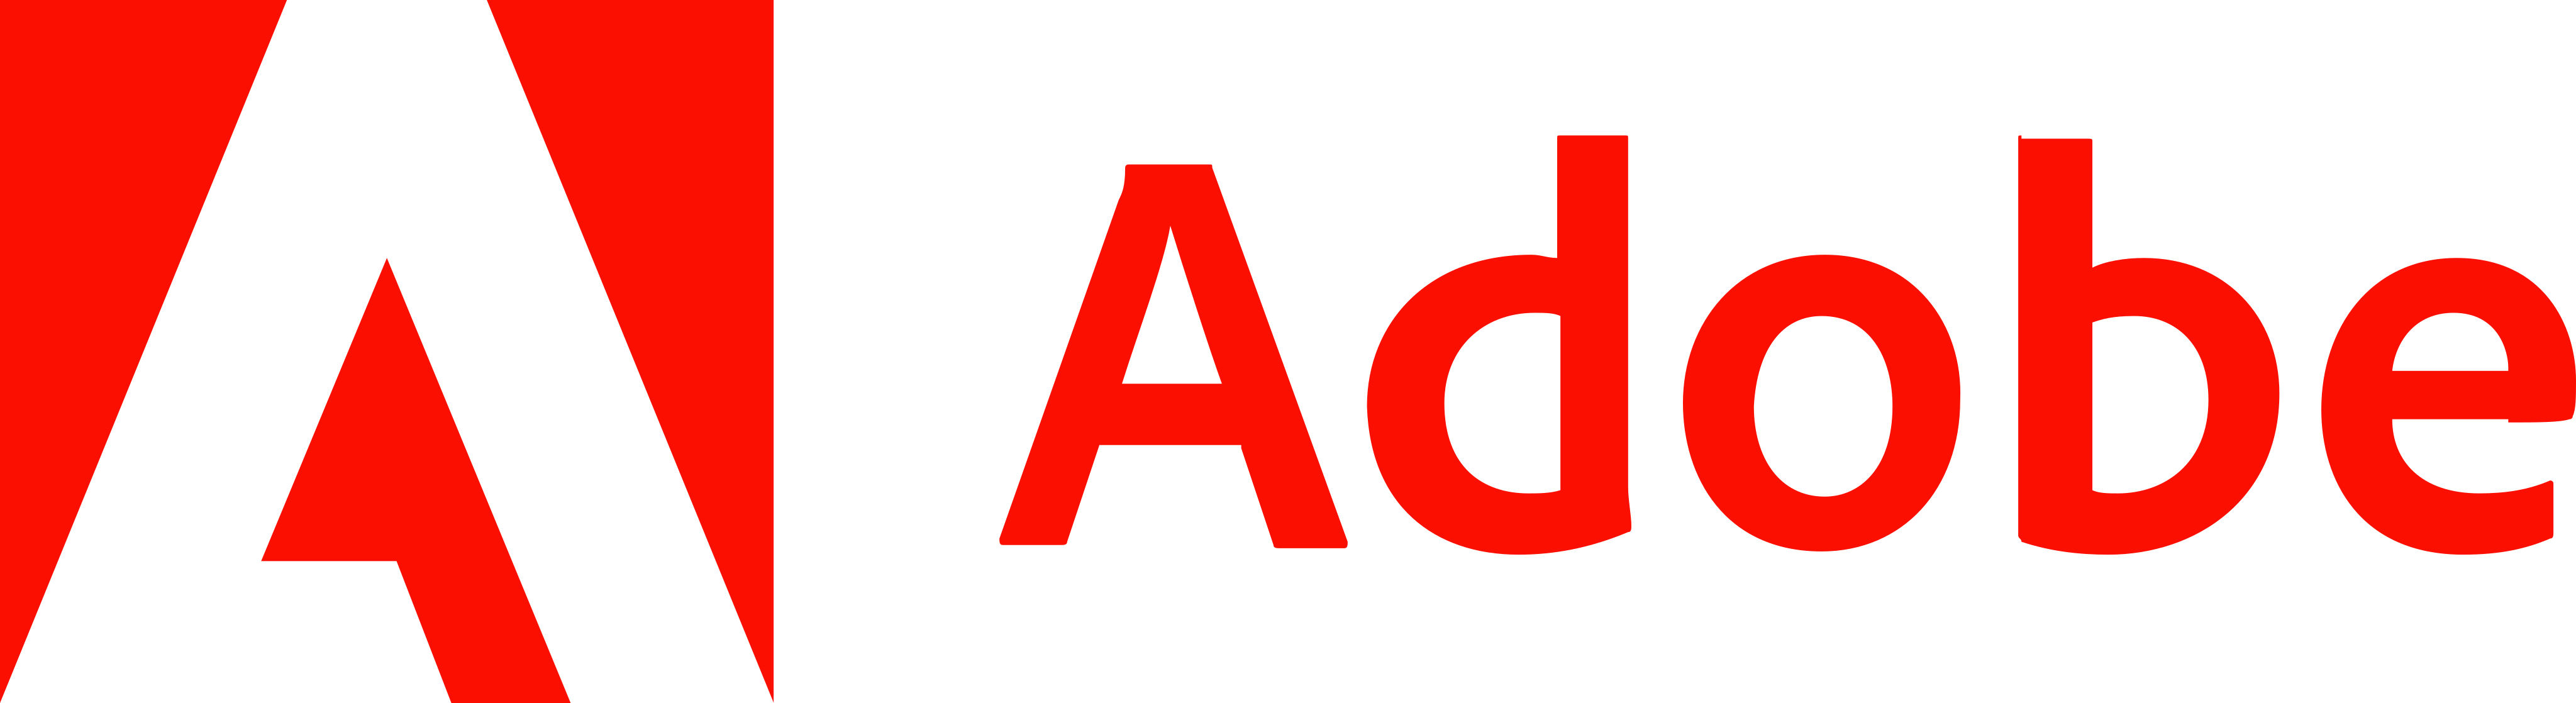 adobe logo 13 - Adobe Logo